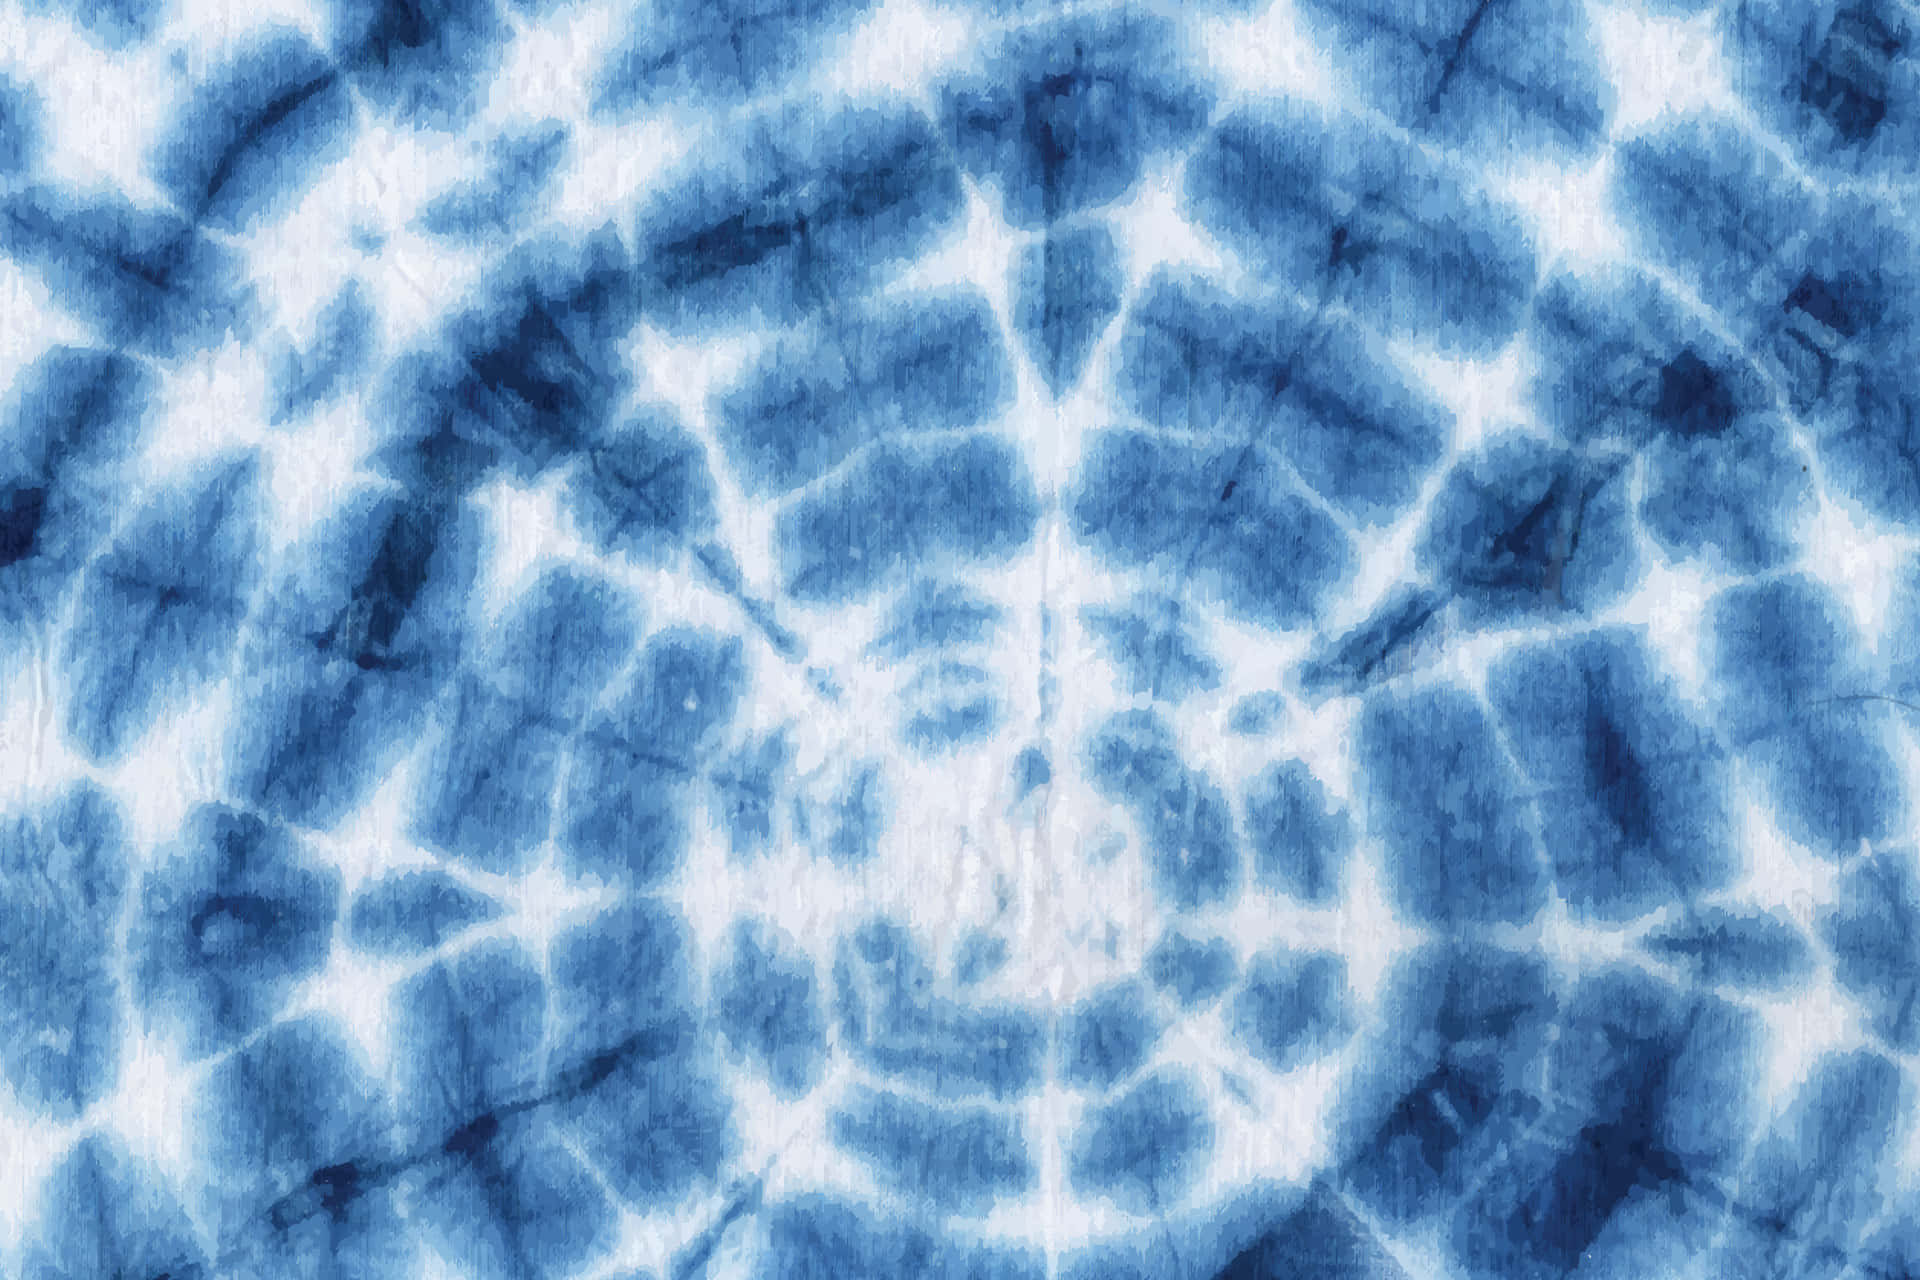 En levende blå spiral tie dye mønster designet til at gøre et kraftigt udsagn. Wallpaper